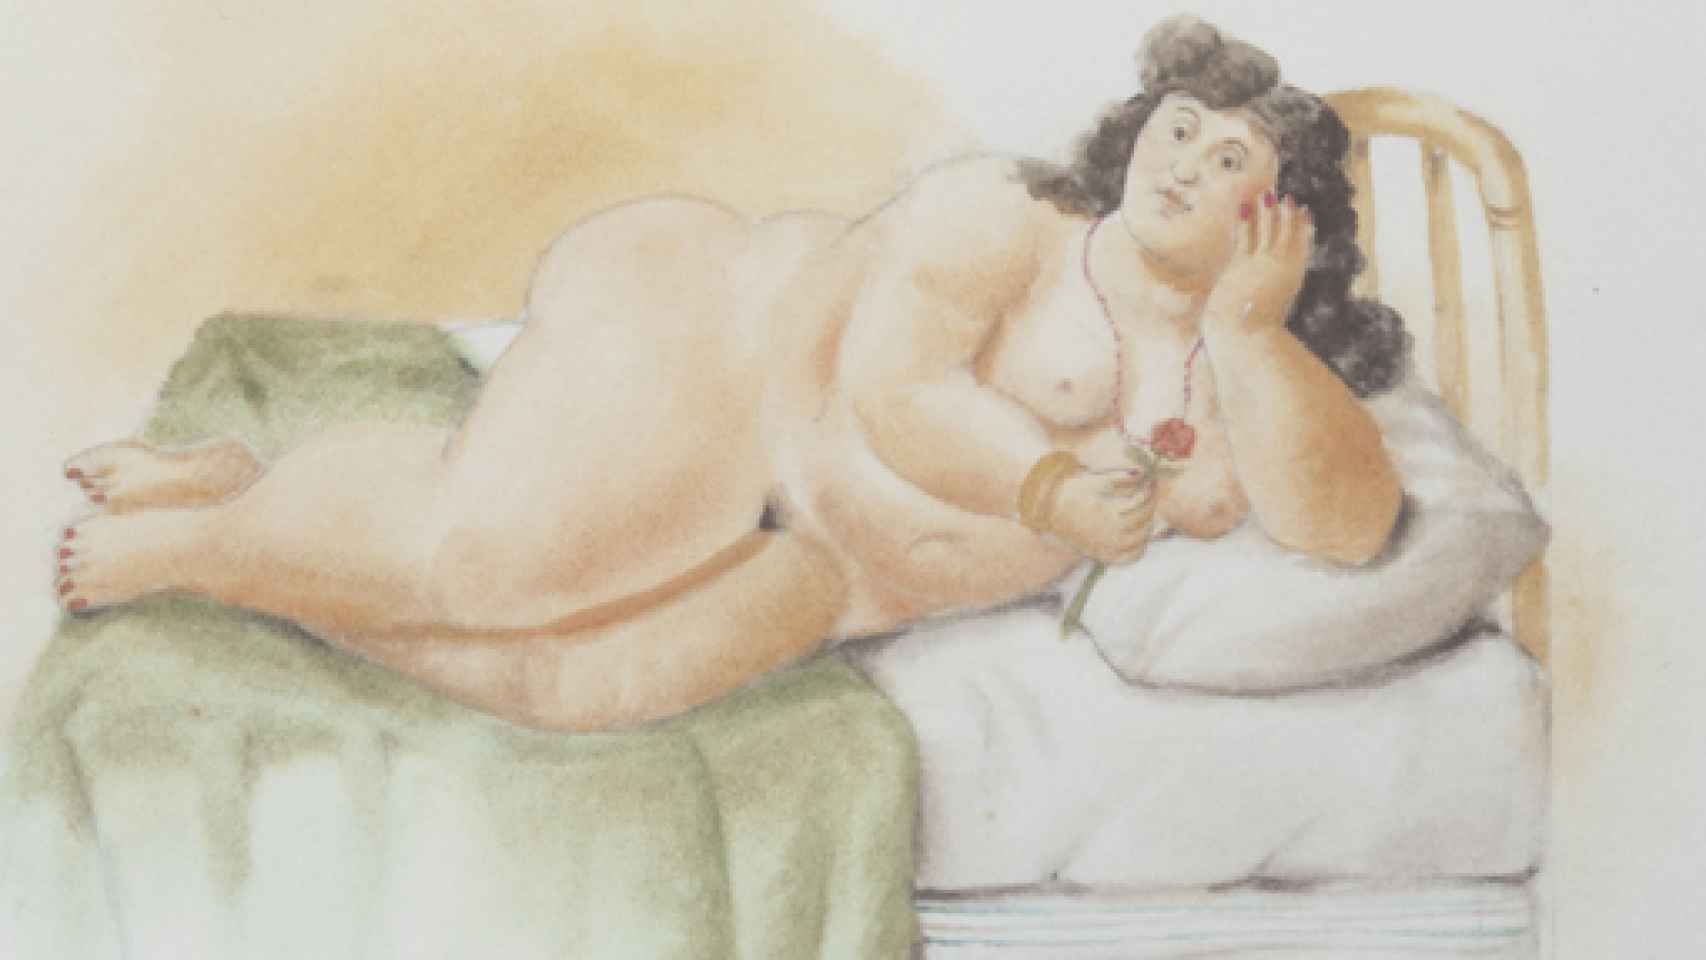 Image: El universo femenino de Fernando Botero en una edición de lujo